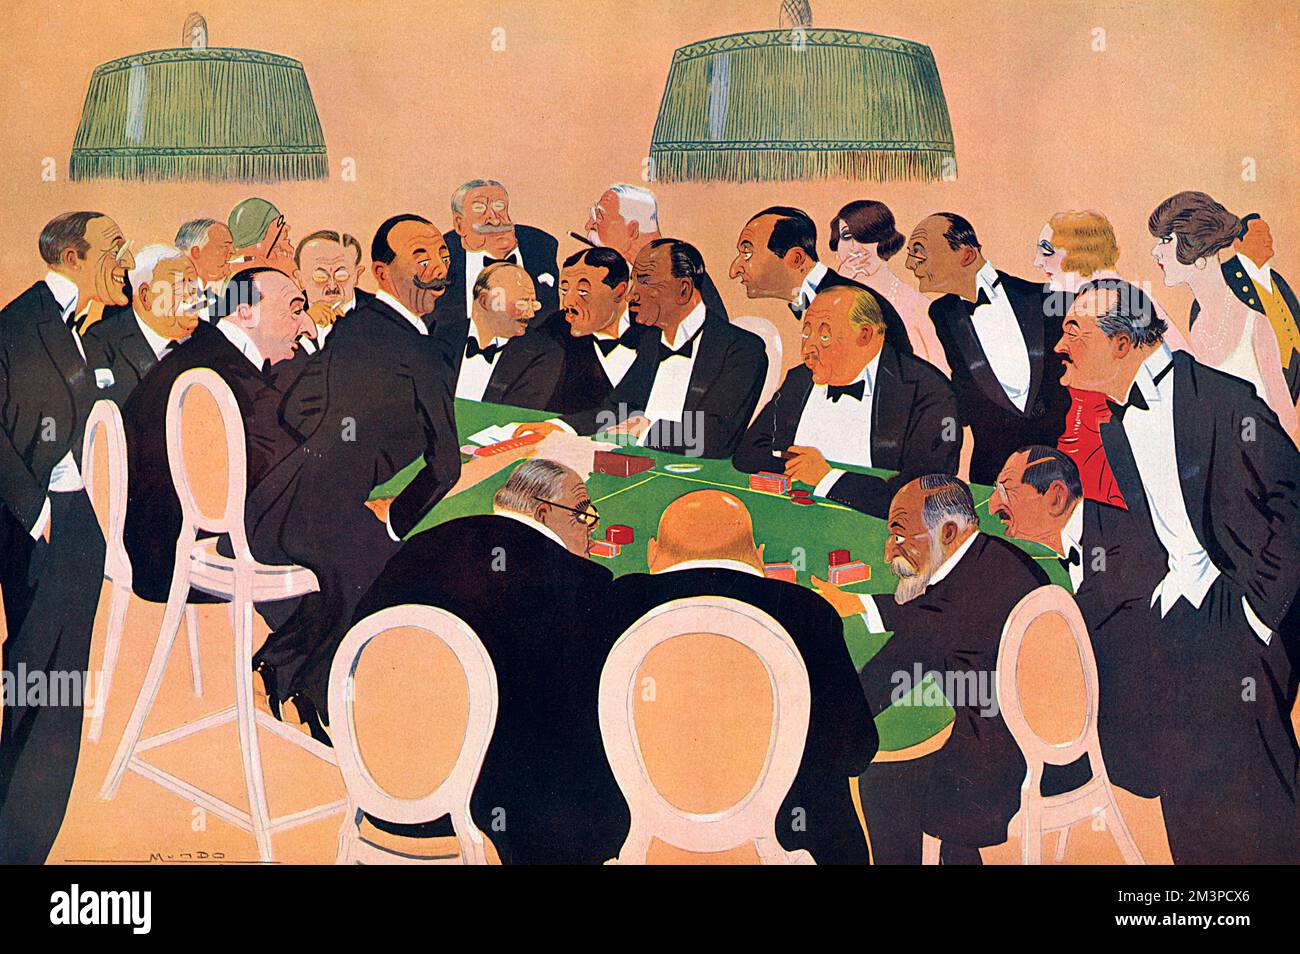 Un cast di noti patroni al casinò di Deauville alla moda nel 1929. Tra le personalità figurano James Hennessy (secondo da sinistra), M. Andre Citroen (seduto al di là del croupier) e l'Aga Khan, seduto in primo piano. Chiave per tutti gli individui pubblicati nello stesso numero. Data: 1929 Foto Stock